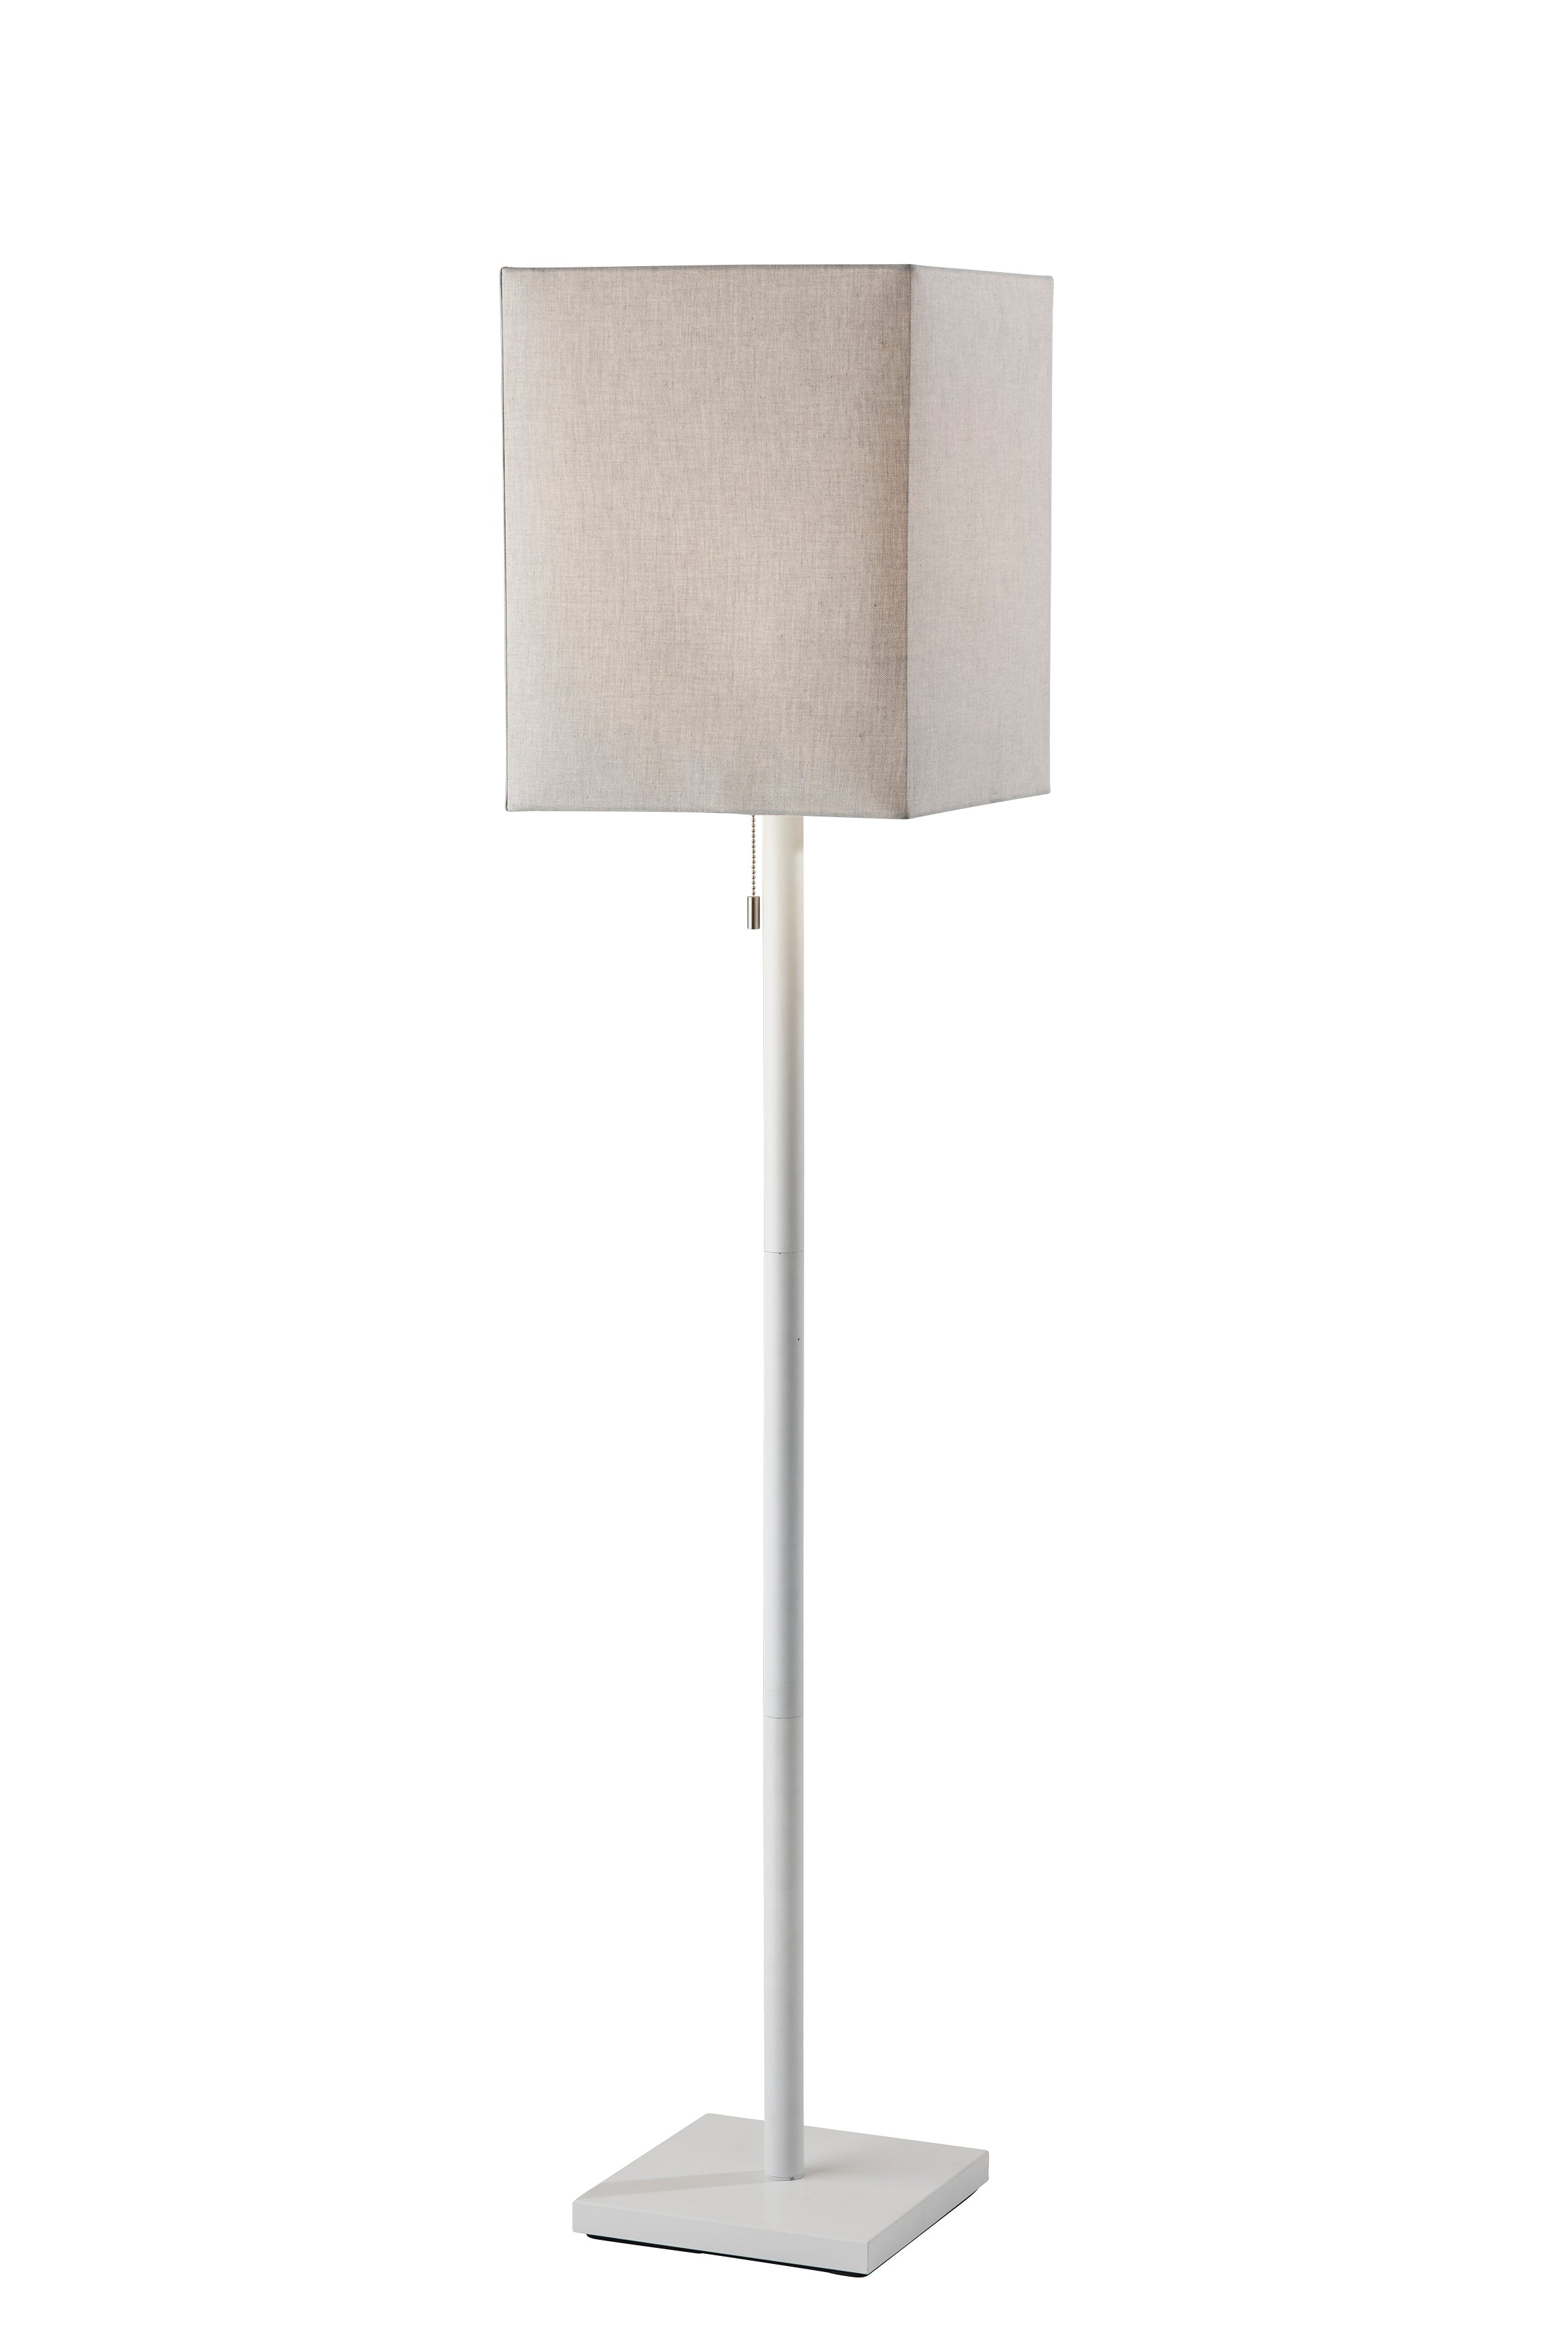 ESTELLE Lampe sur pied Blanc - 1567-02 | ADESSO